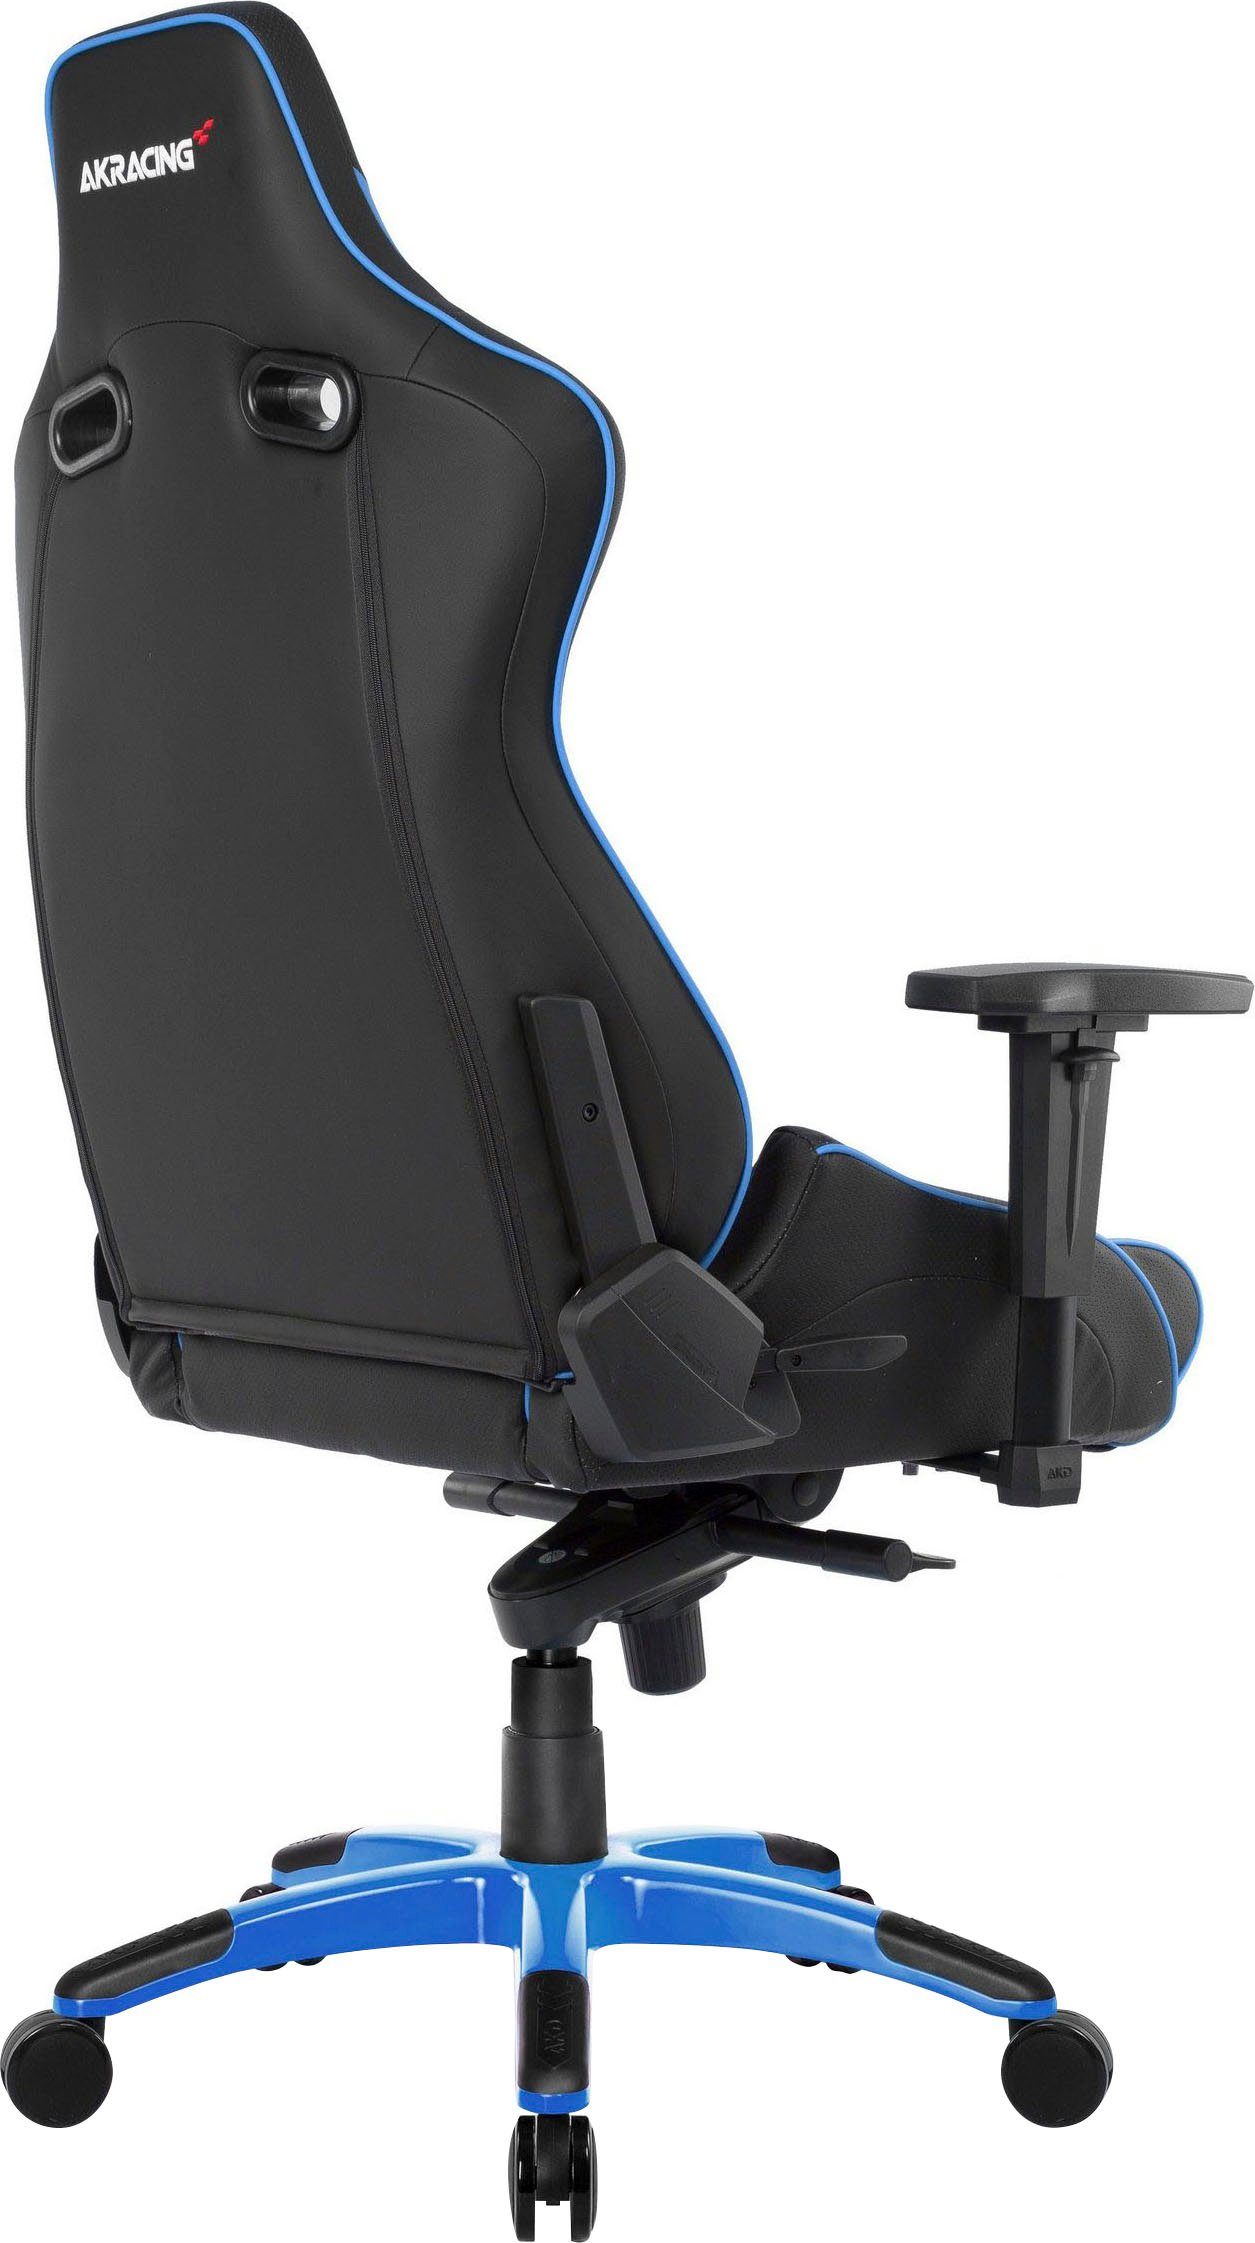 Blau Gaming-Stuhl Pro AKRacing Master